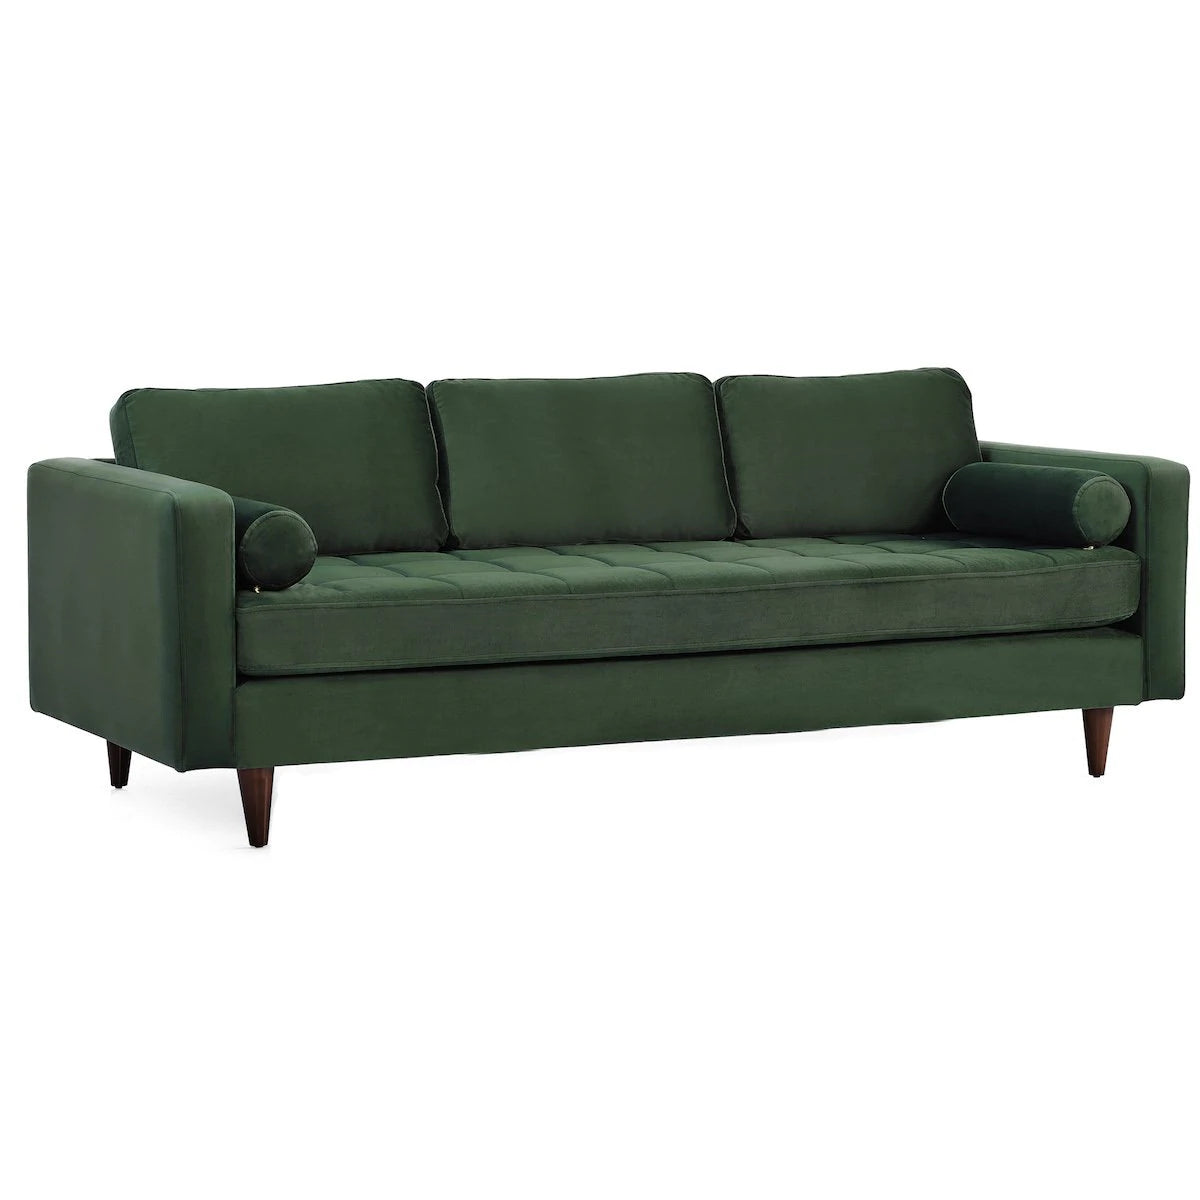 Mid-Century Modern Rectangular Pillow Back Velvet Upholstered Sofa in Rich Forest Green